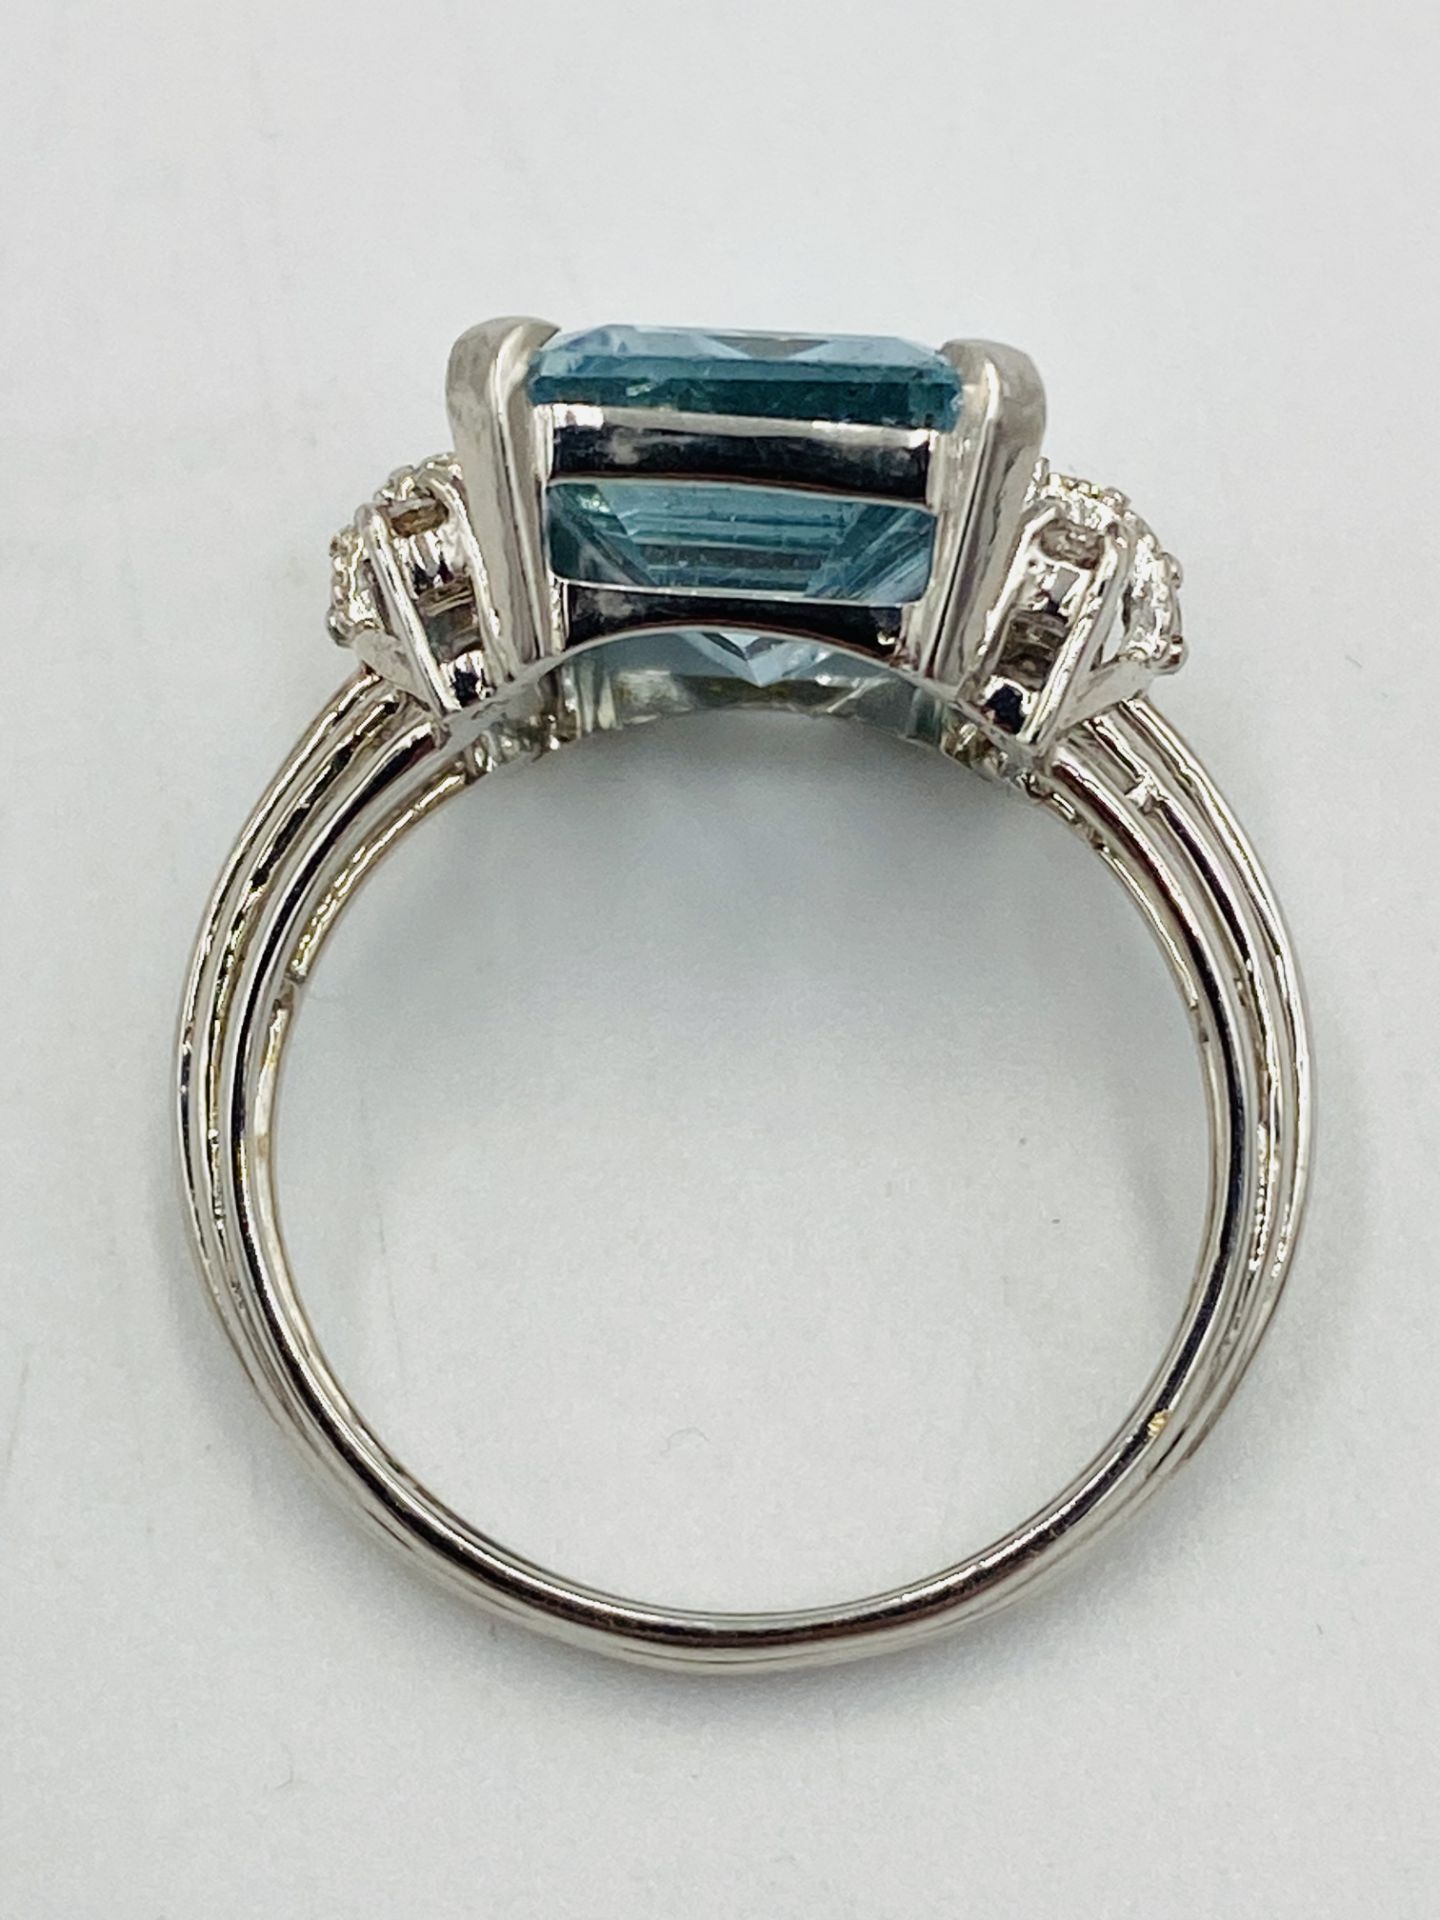 18ct white gold, aquamarine and diamond ring - Image 2 of 5